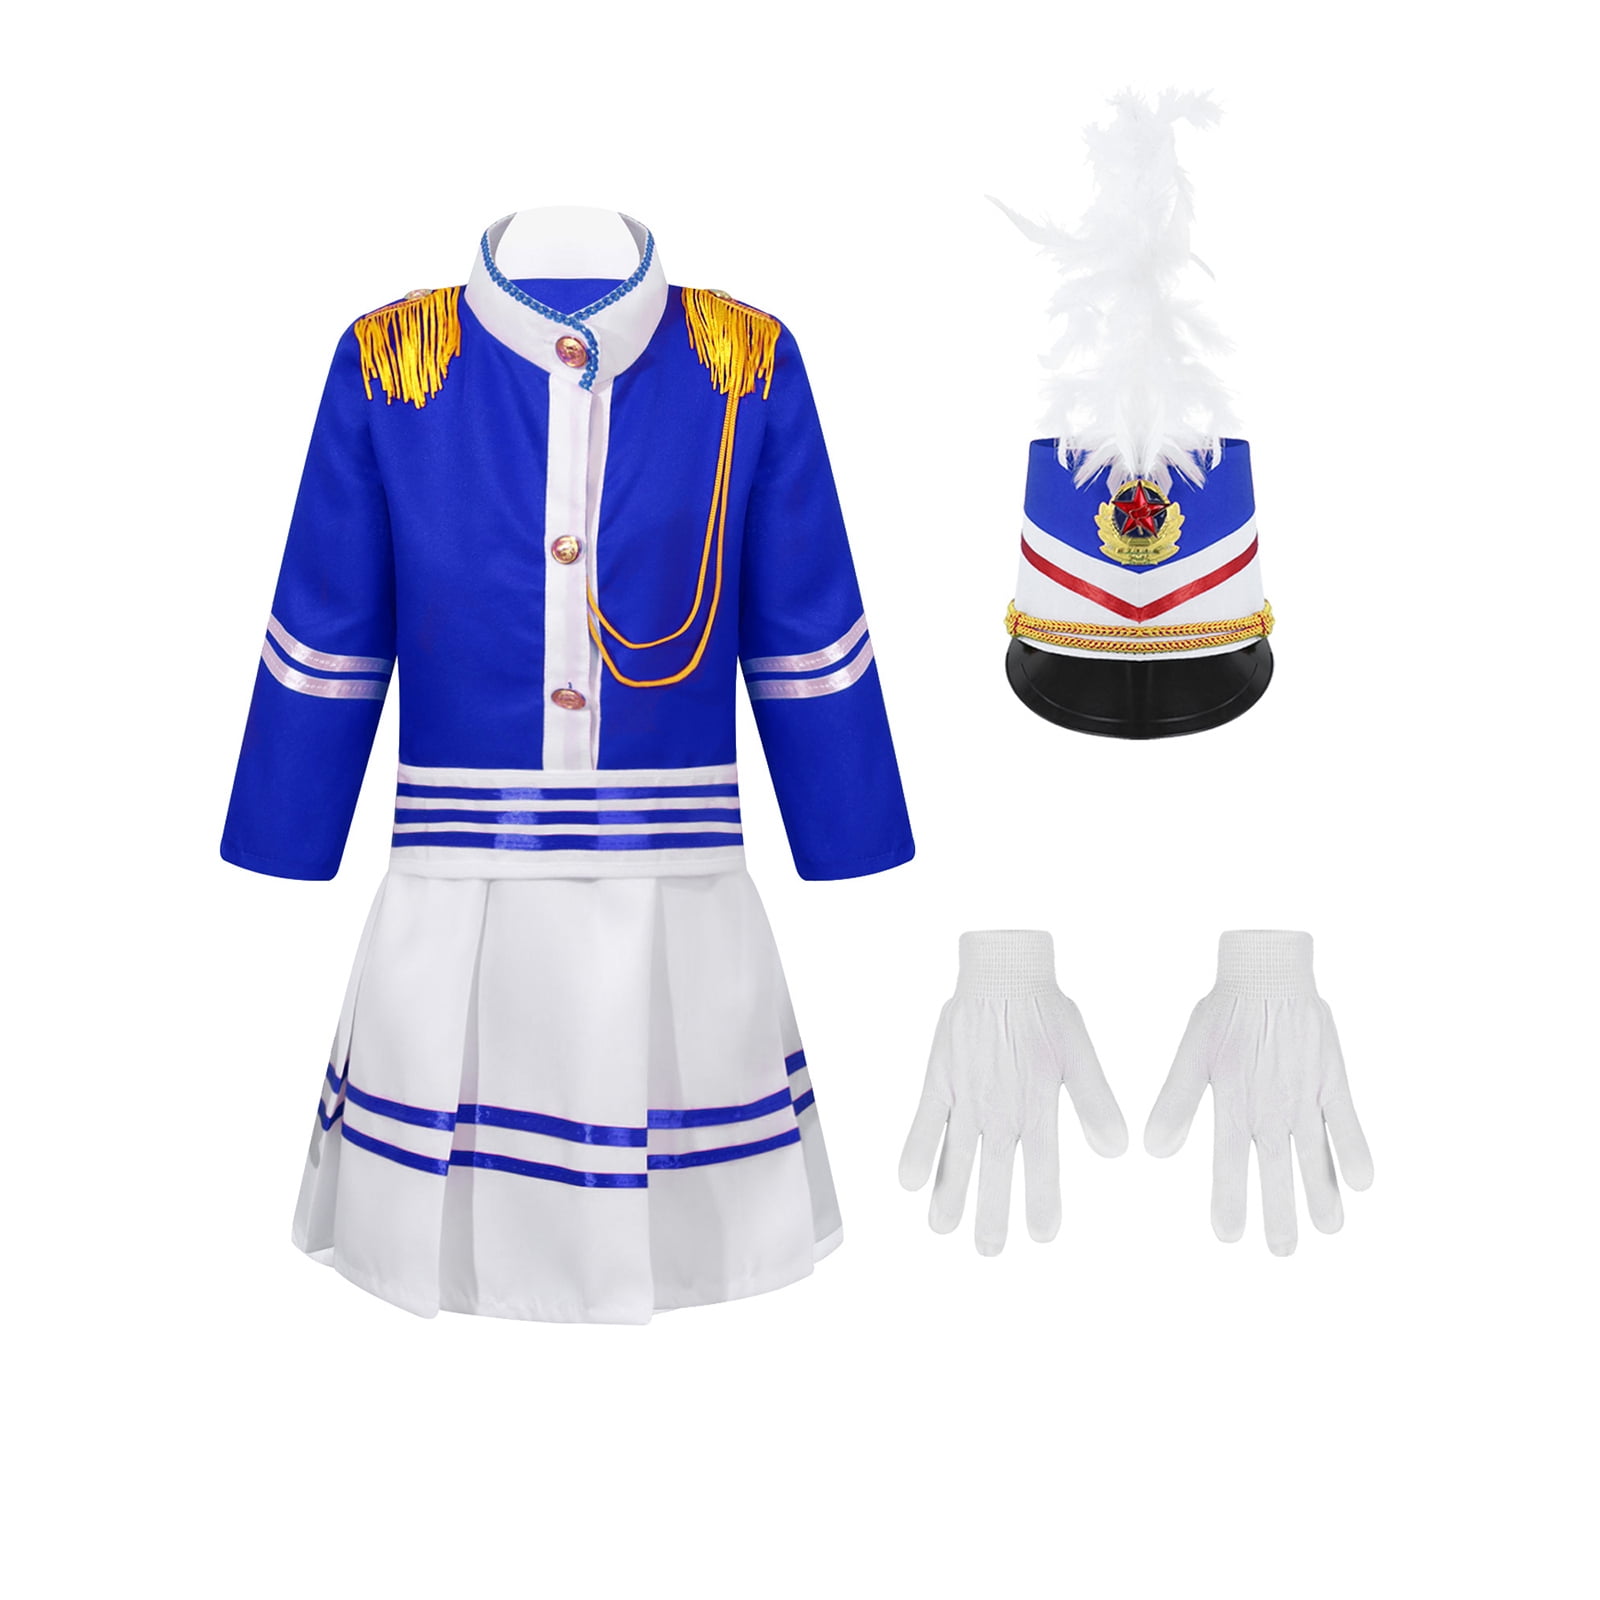 YONGHS Unisex Girls Boys Marching Band Costume Uniform Sets Jacket